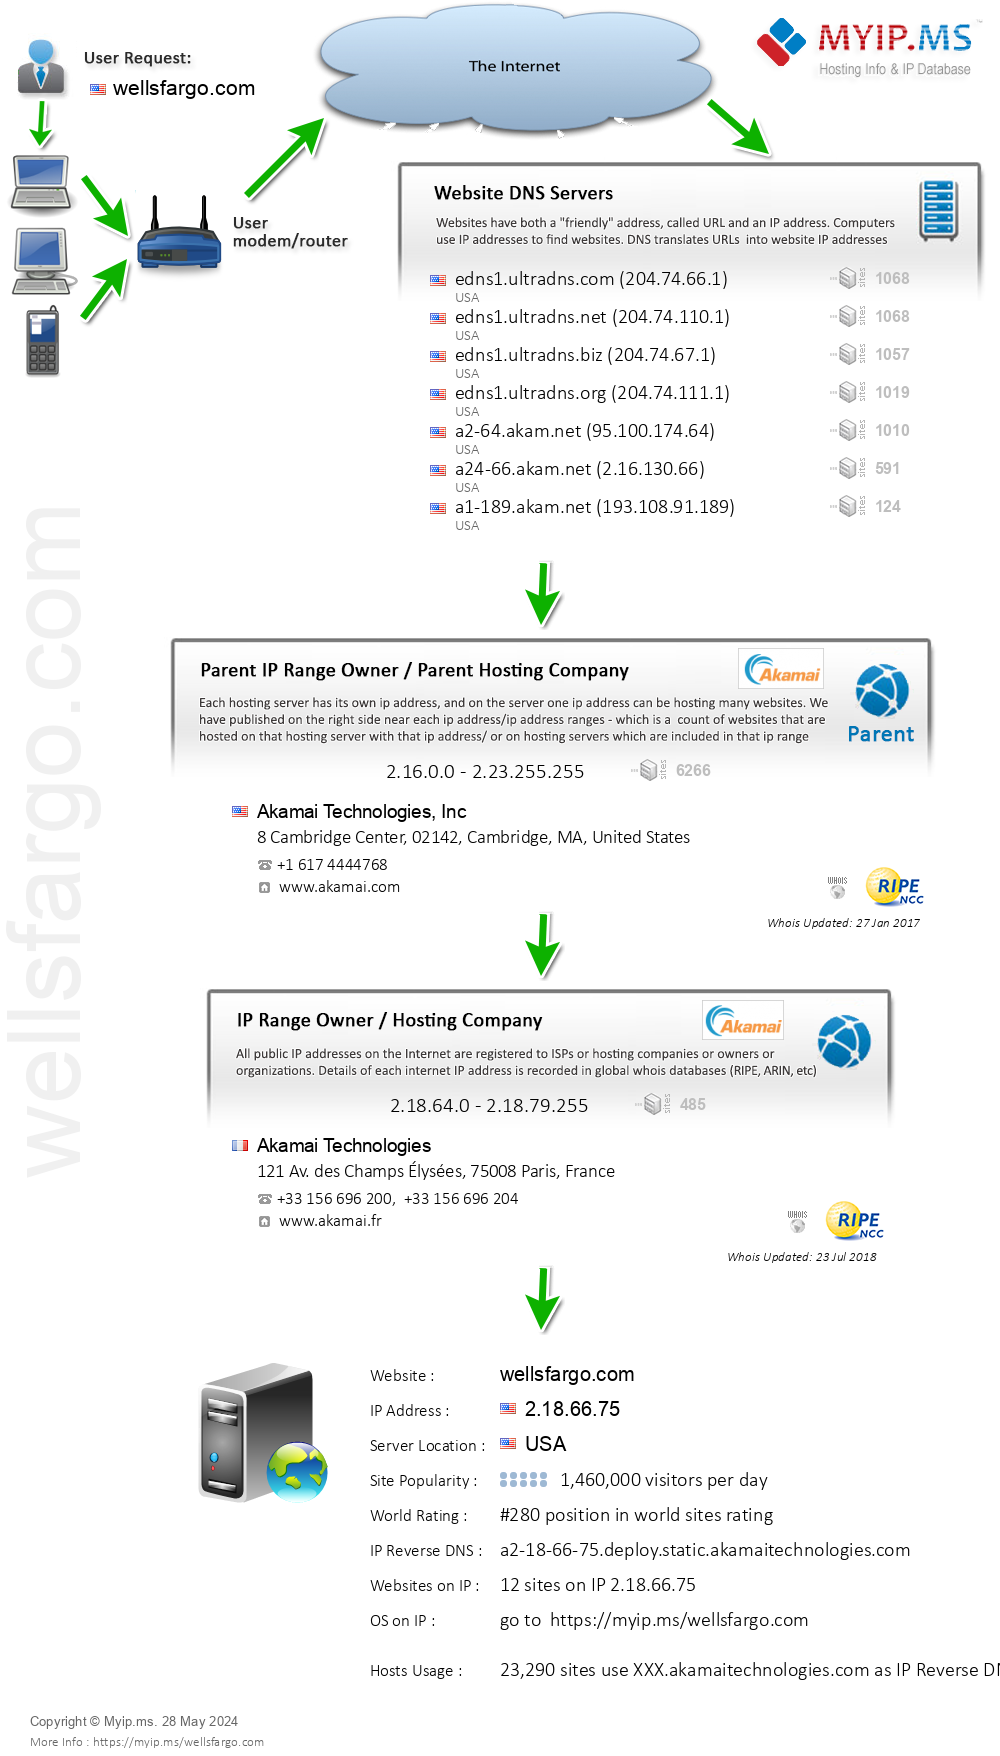 Wellsfargo.com - Website Hosting Visual IP Diagram